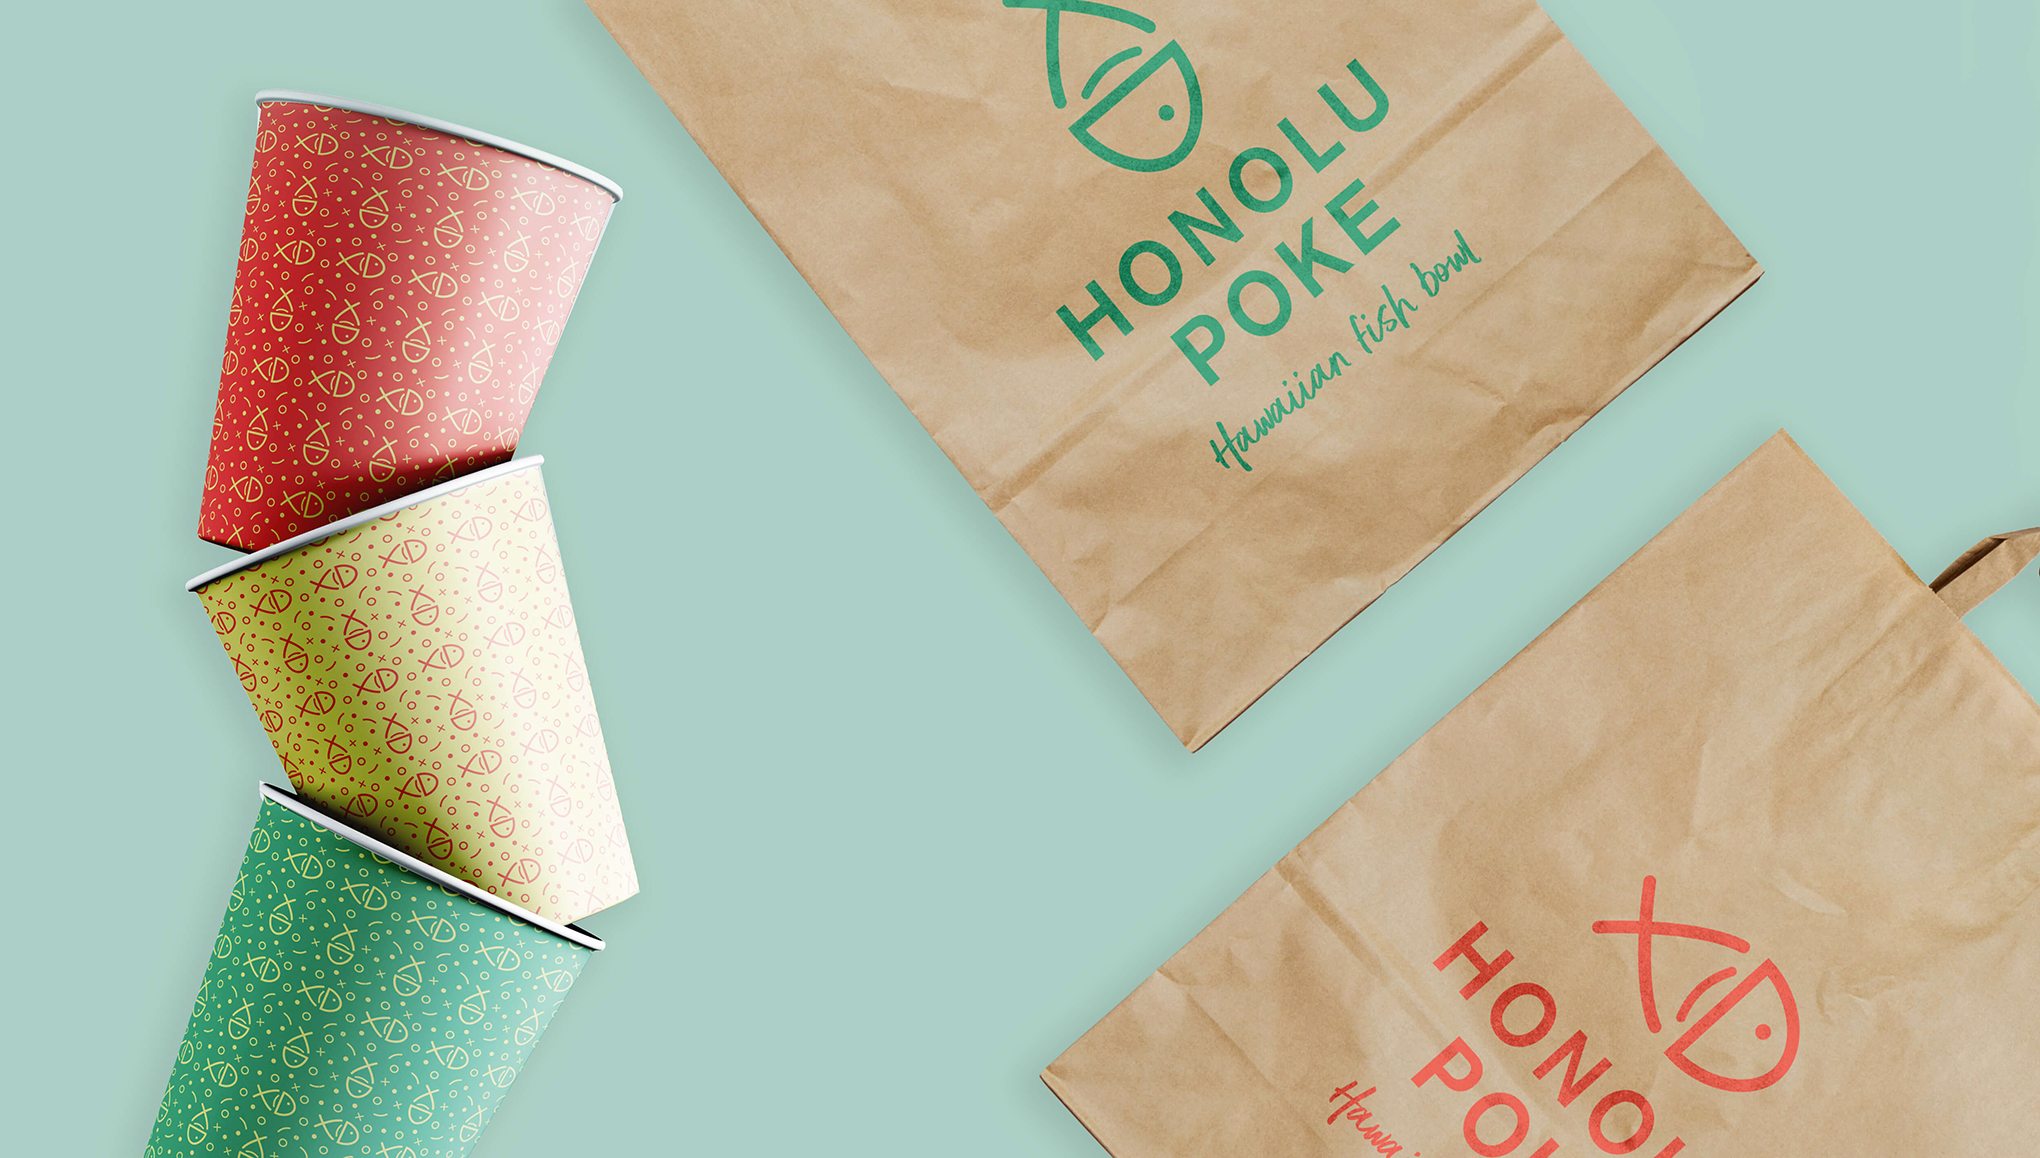 Honolu Poke packaging